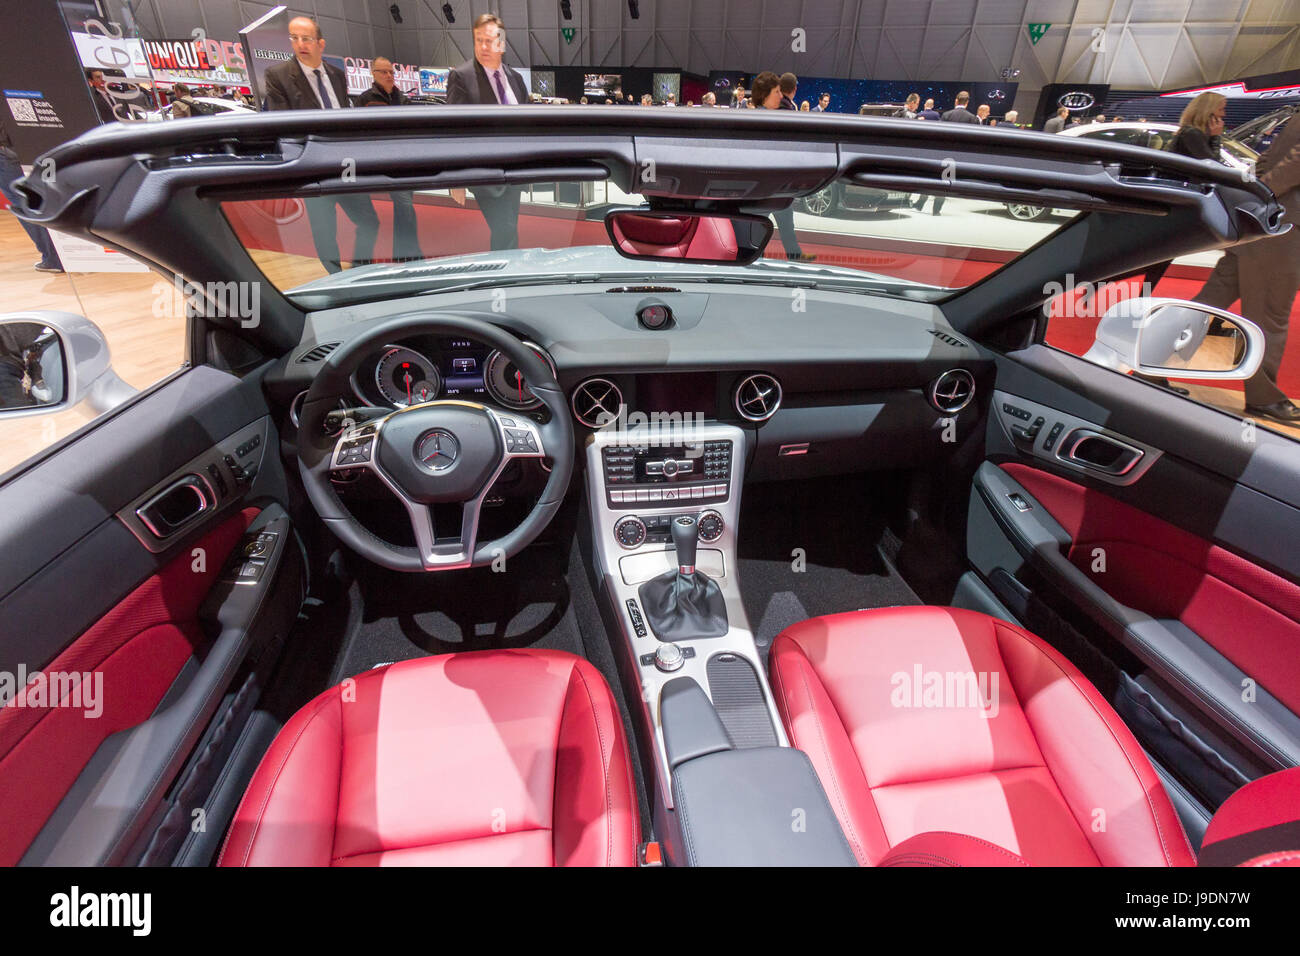 Genf, Schweiz - 4. März 2015: Innenraum der Mercedes-Benz SLK 200  CarbonLOOK Edition Faser auf der 85. Internationalen Genfer Automobilsalon  habe ich geschossen Stockfotografie - Alamy